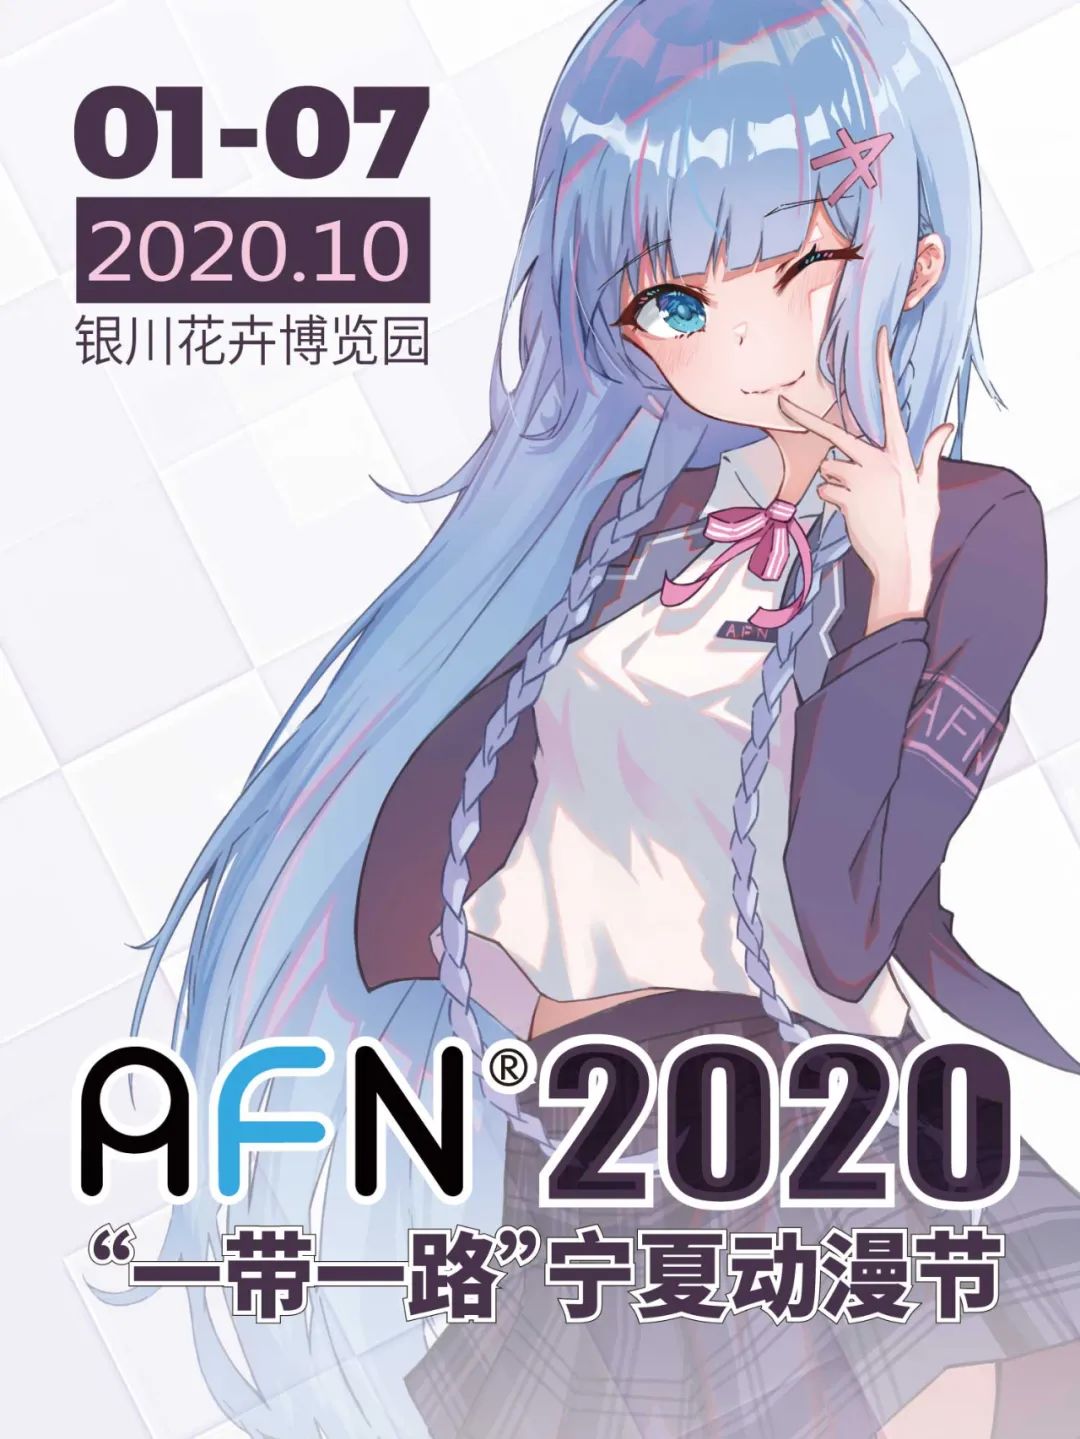 2020年 国庆假期 天闻角川参展一览